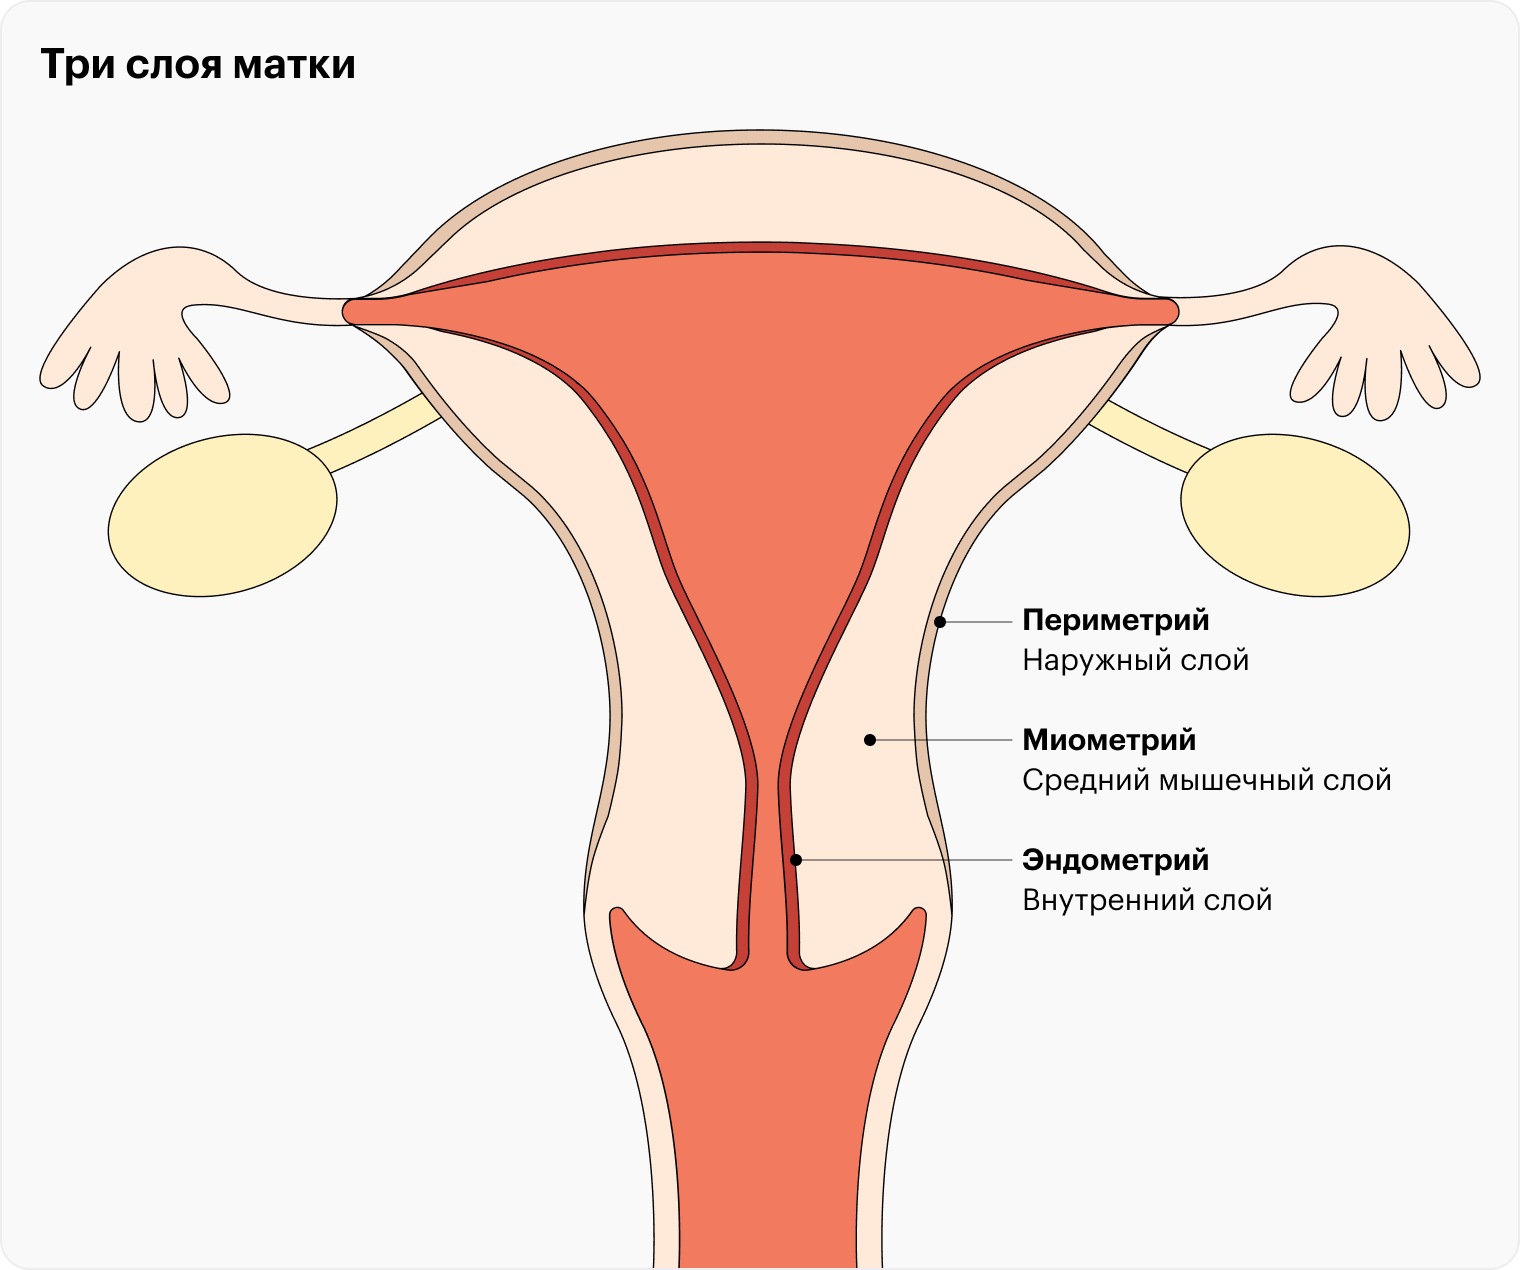 Гипертонус матки: симптомы и лечение